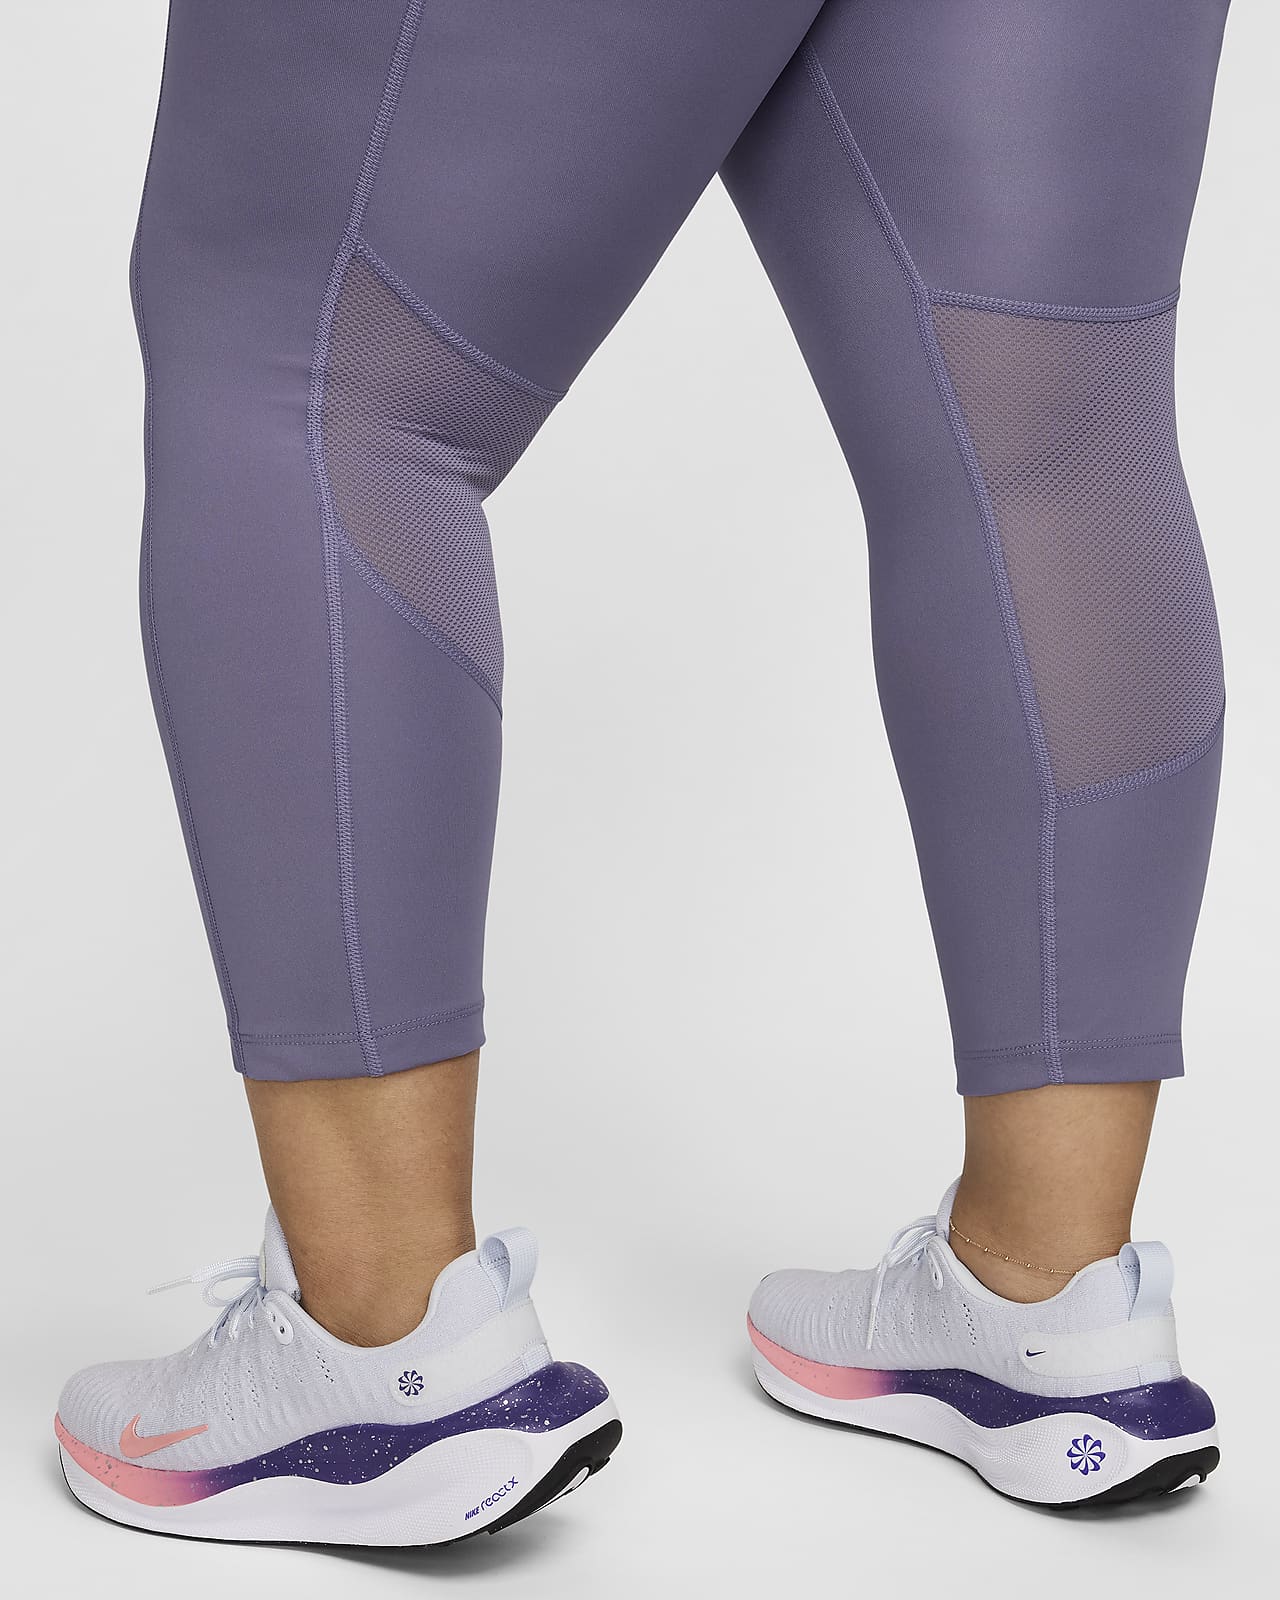 Nike One Damen-Leggings mit mittelhohem Bund (große Größe)